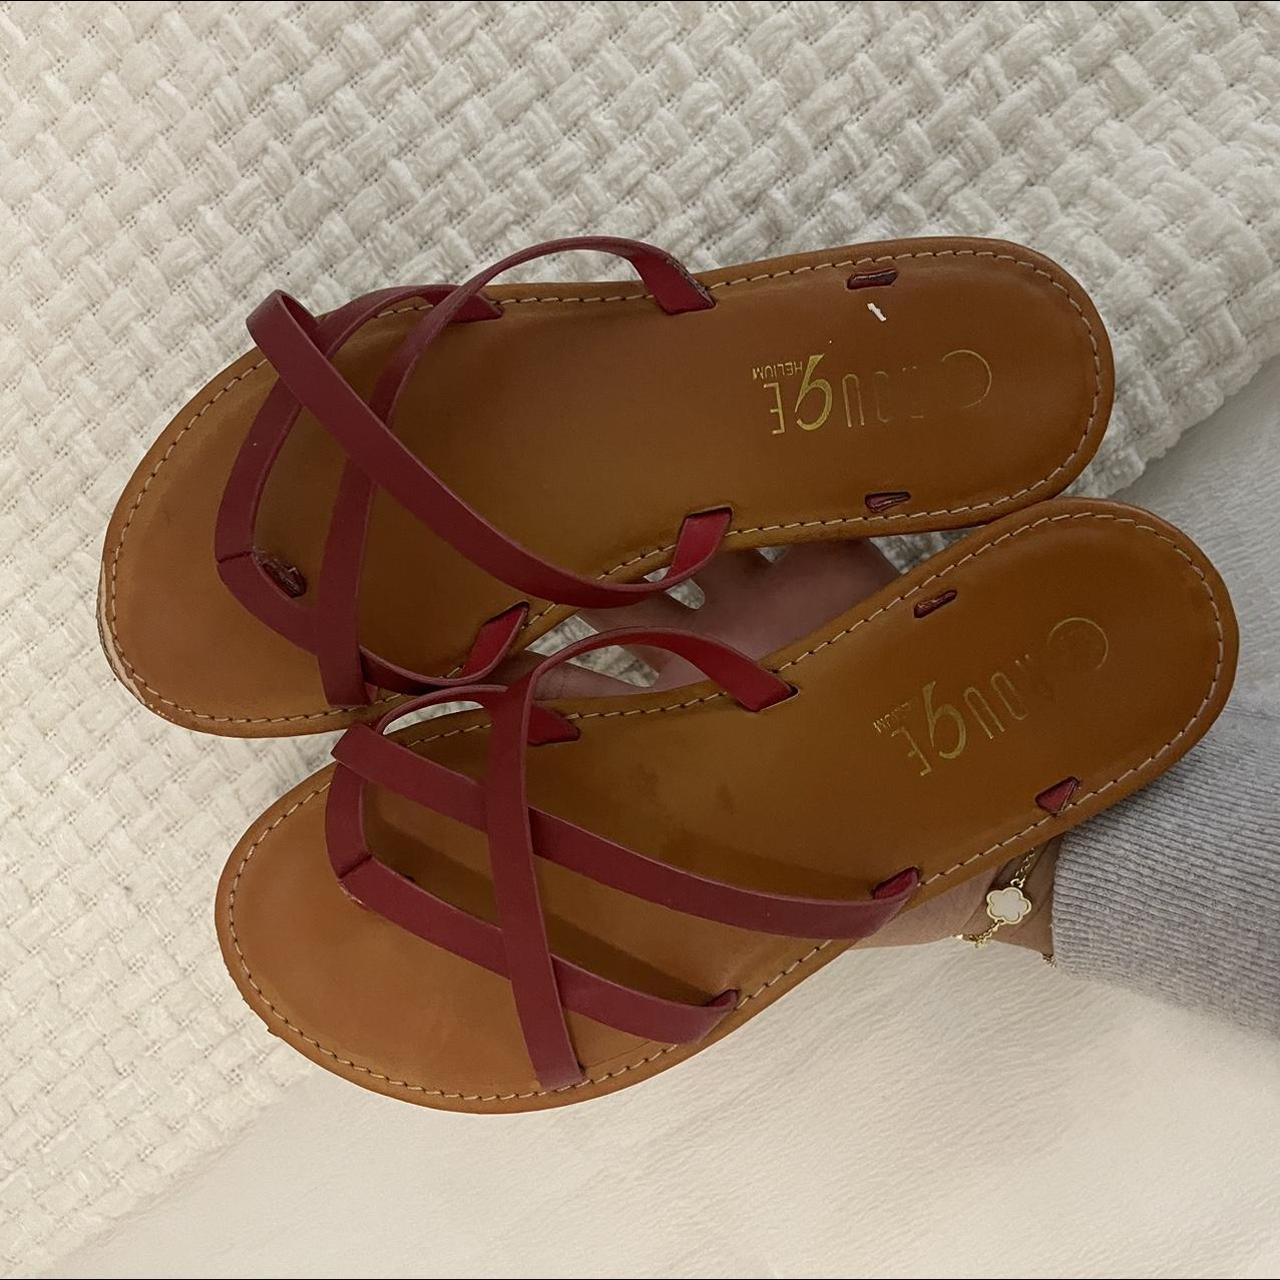 red sandals, size 5.5 - Depop